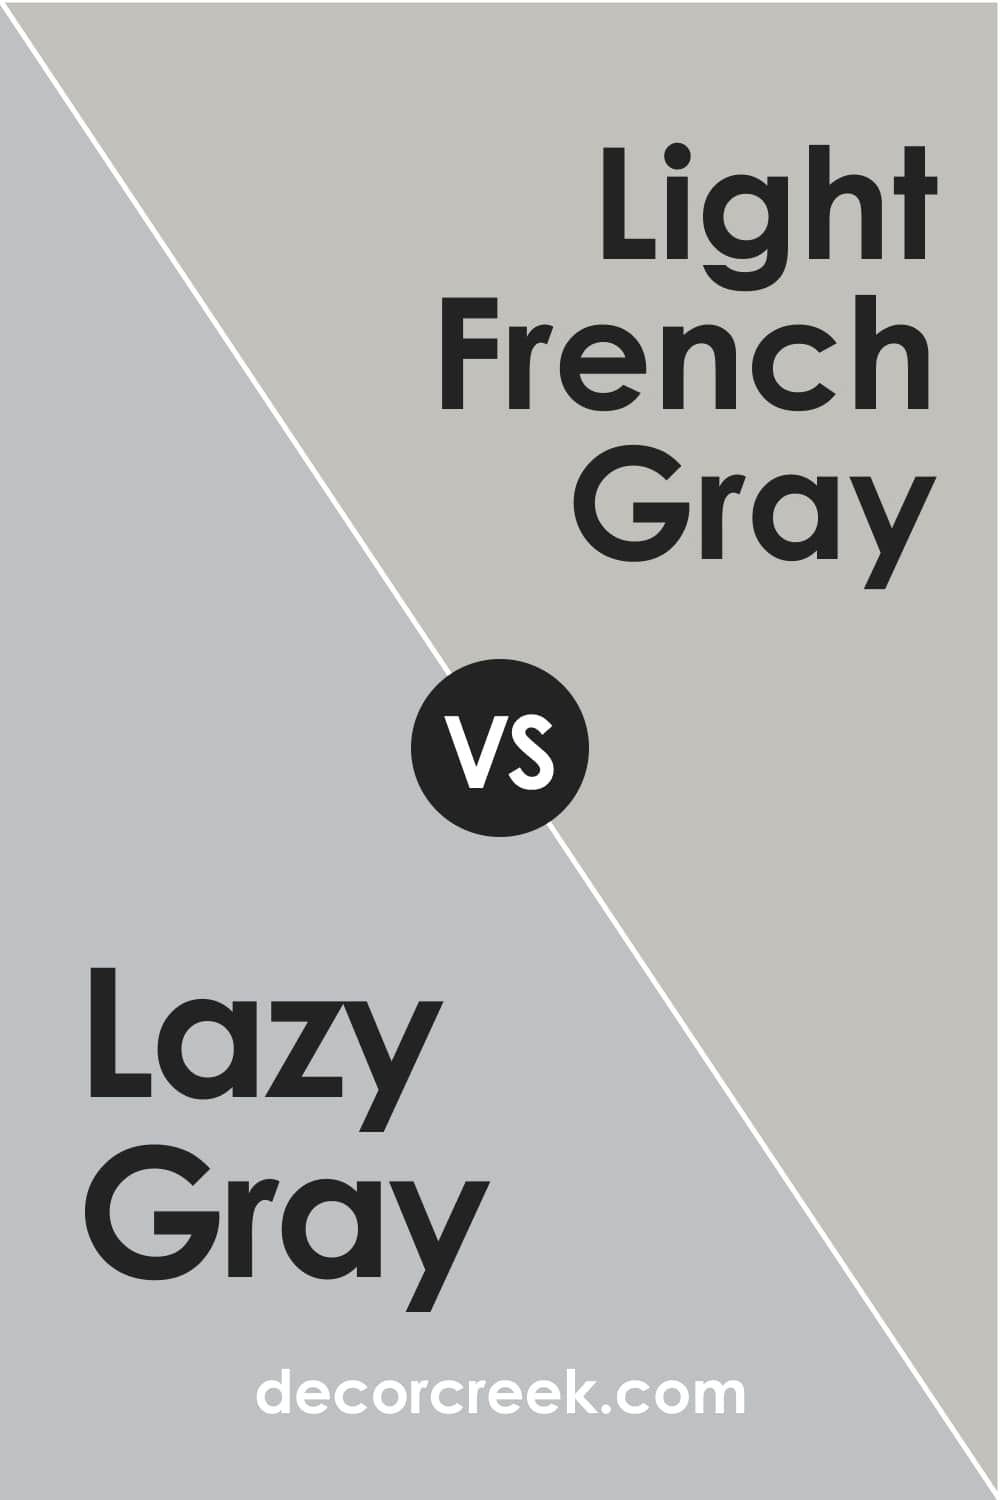 Lazy Gray vs. Light French Gray